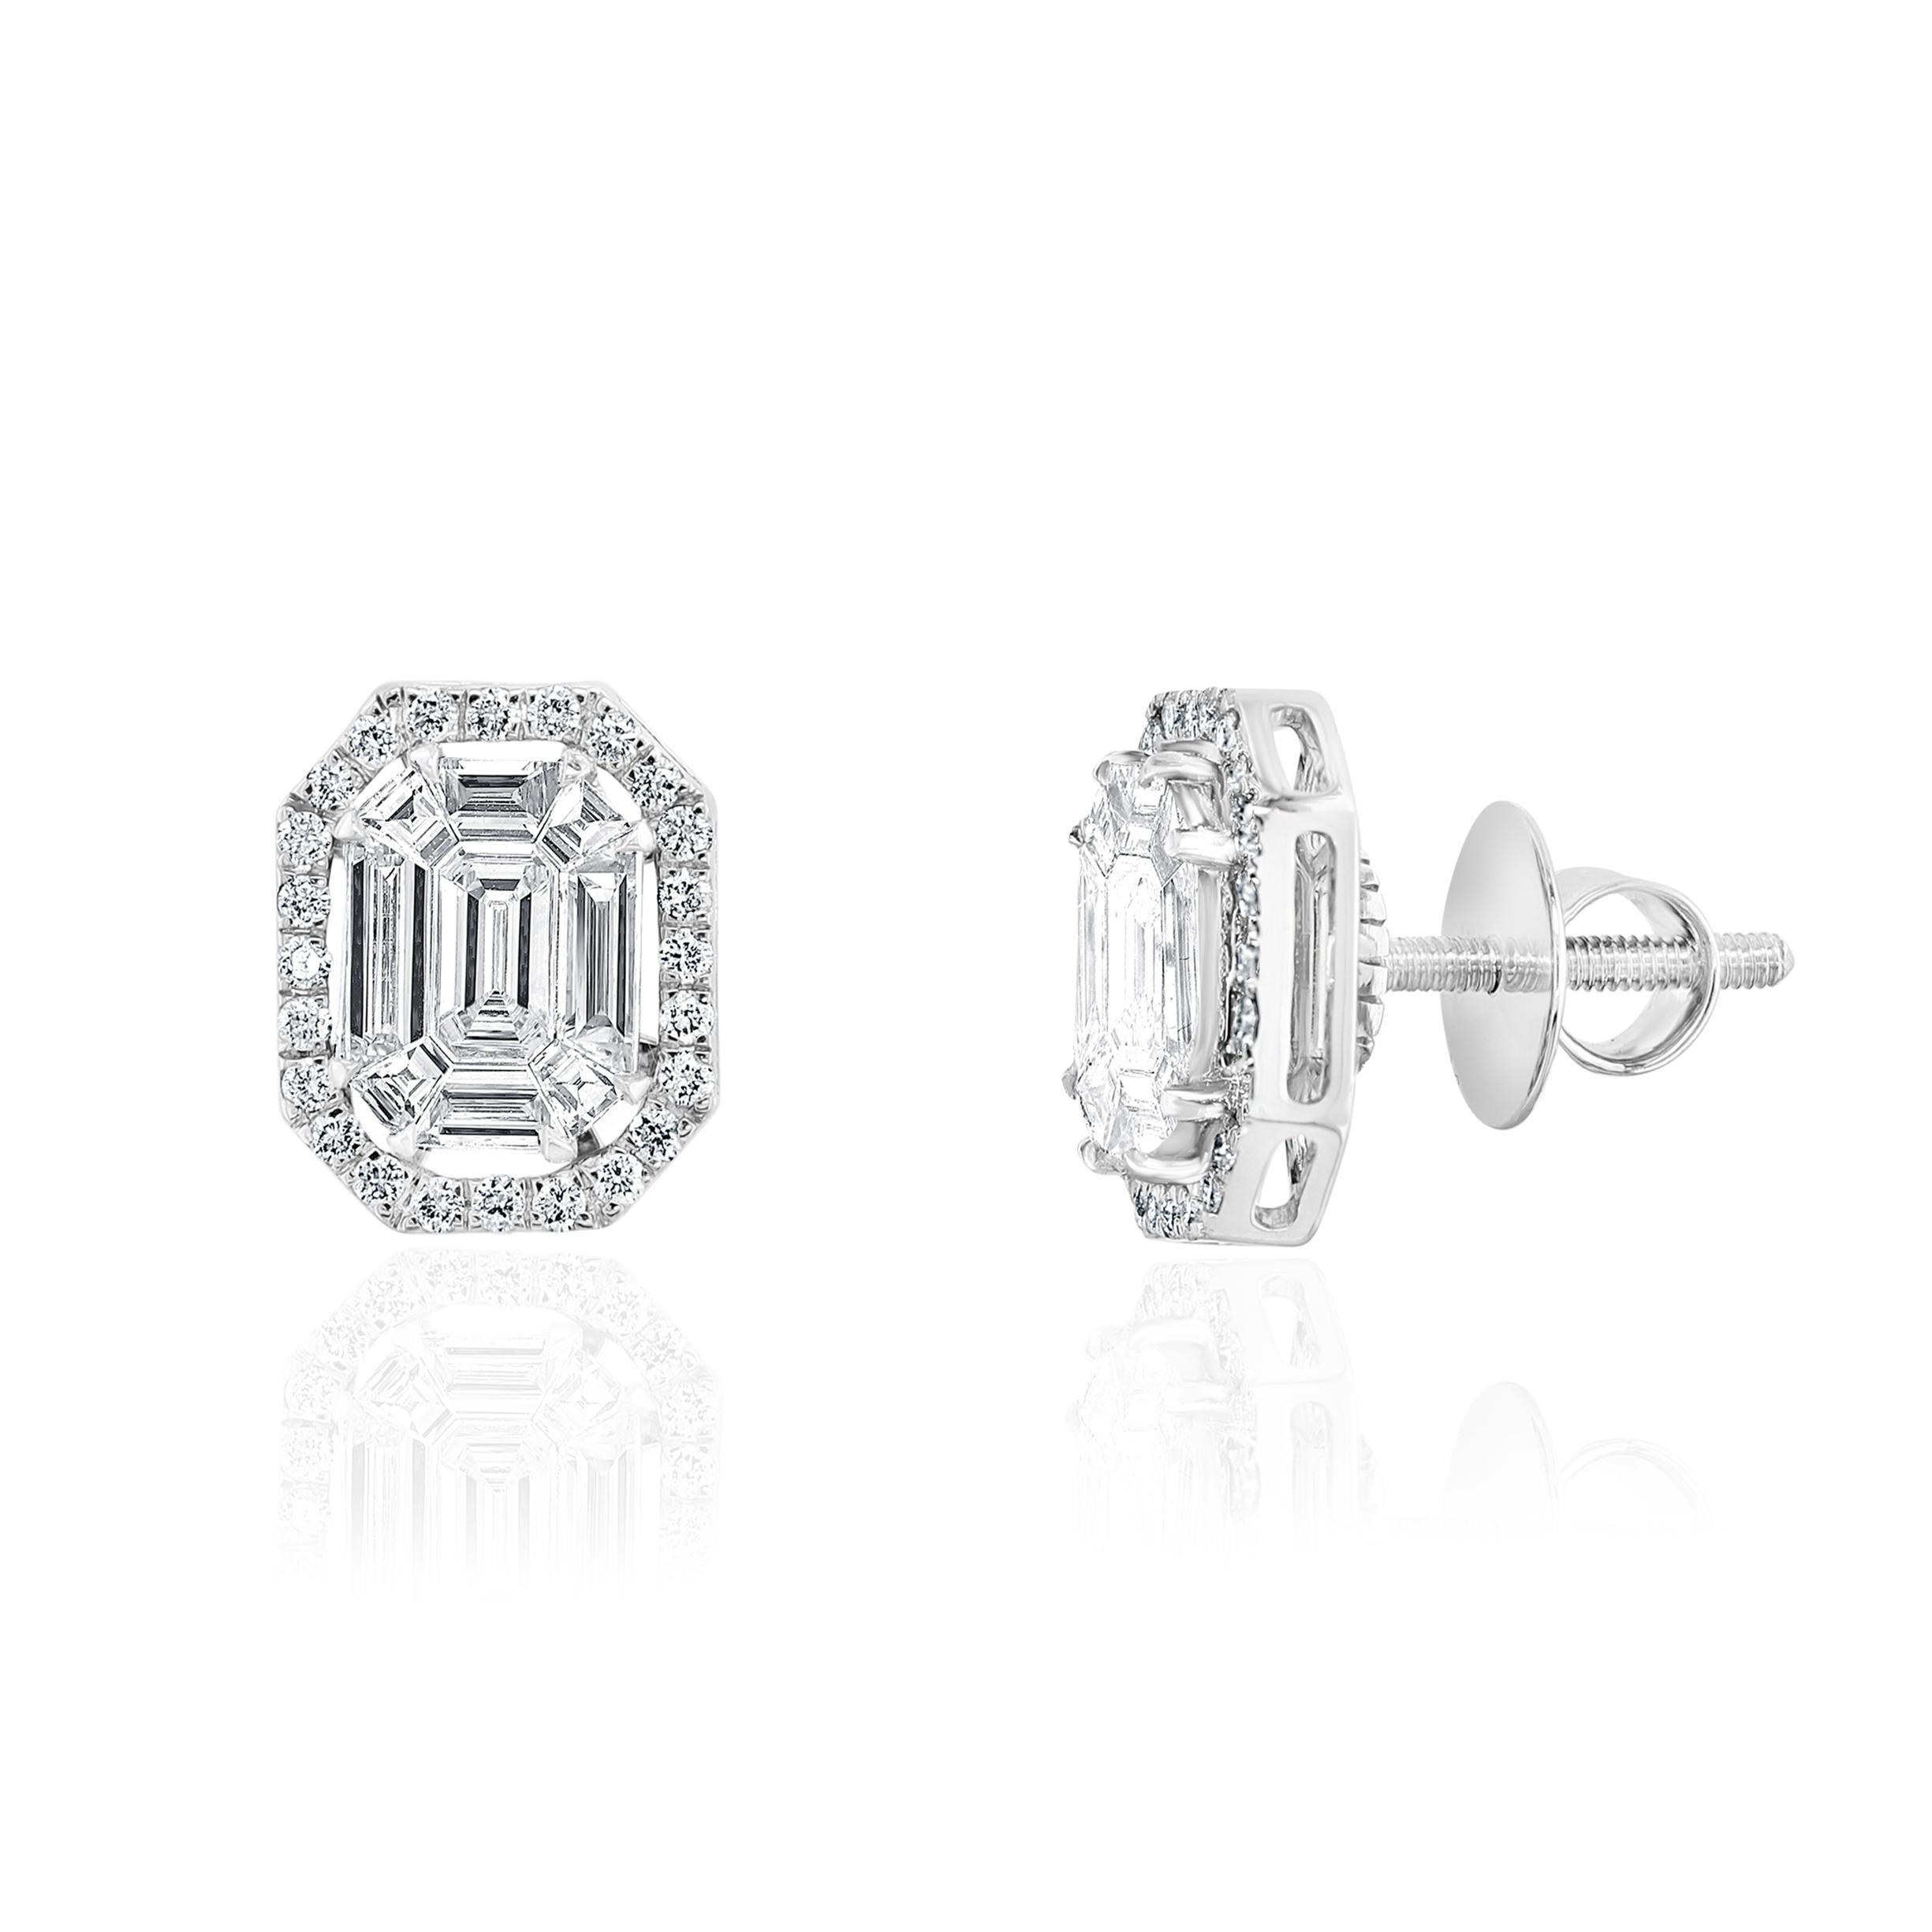 Diamants taille émeraude et taille baguette pesant 1.04 carats.
Diamants ronds pesant 0.30 Carats.

1.34 Carats au total
Serti en or blanc 18 carats.
